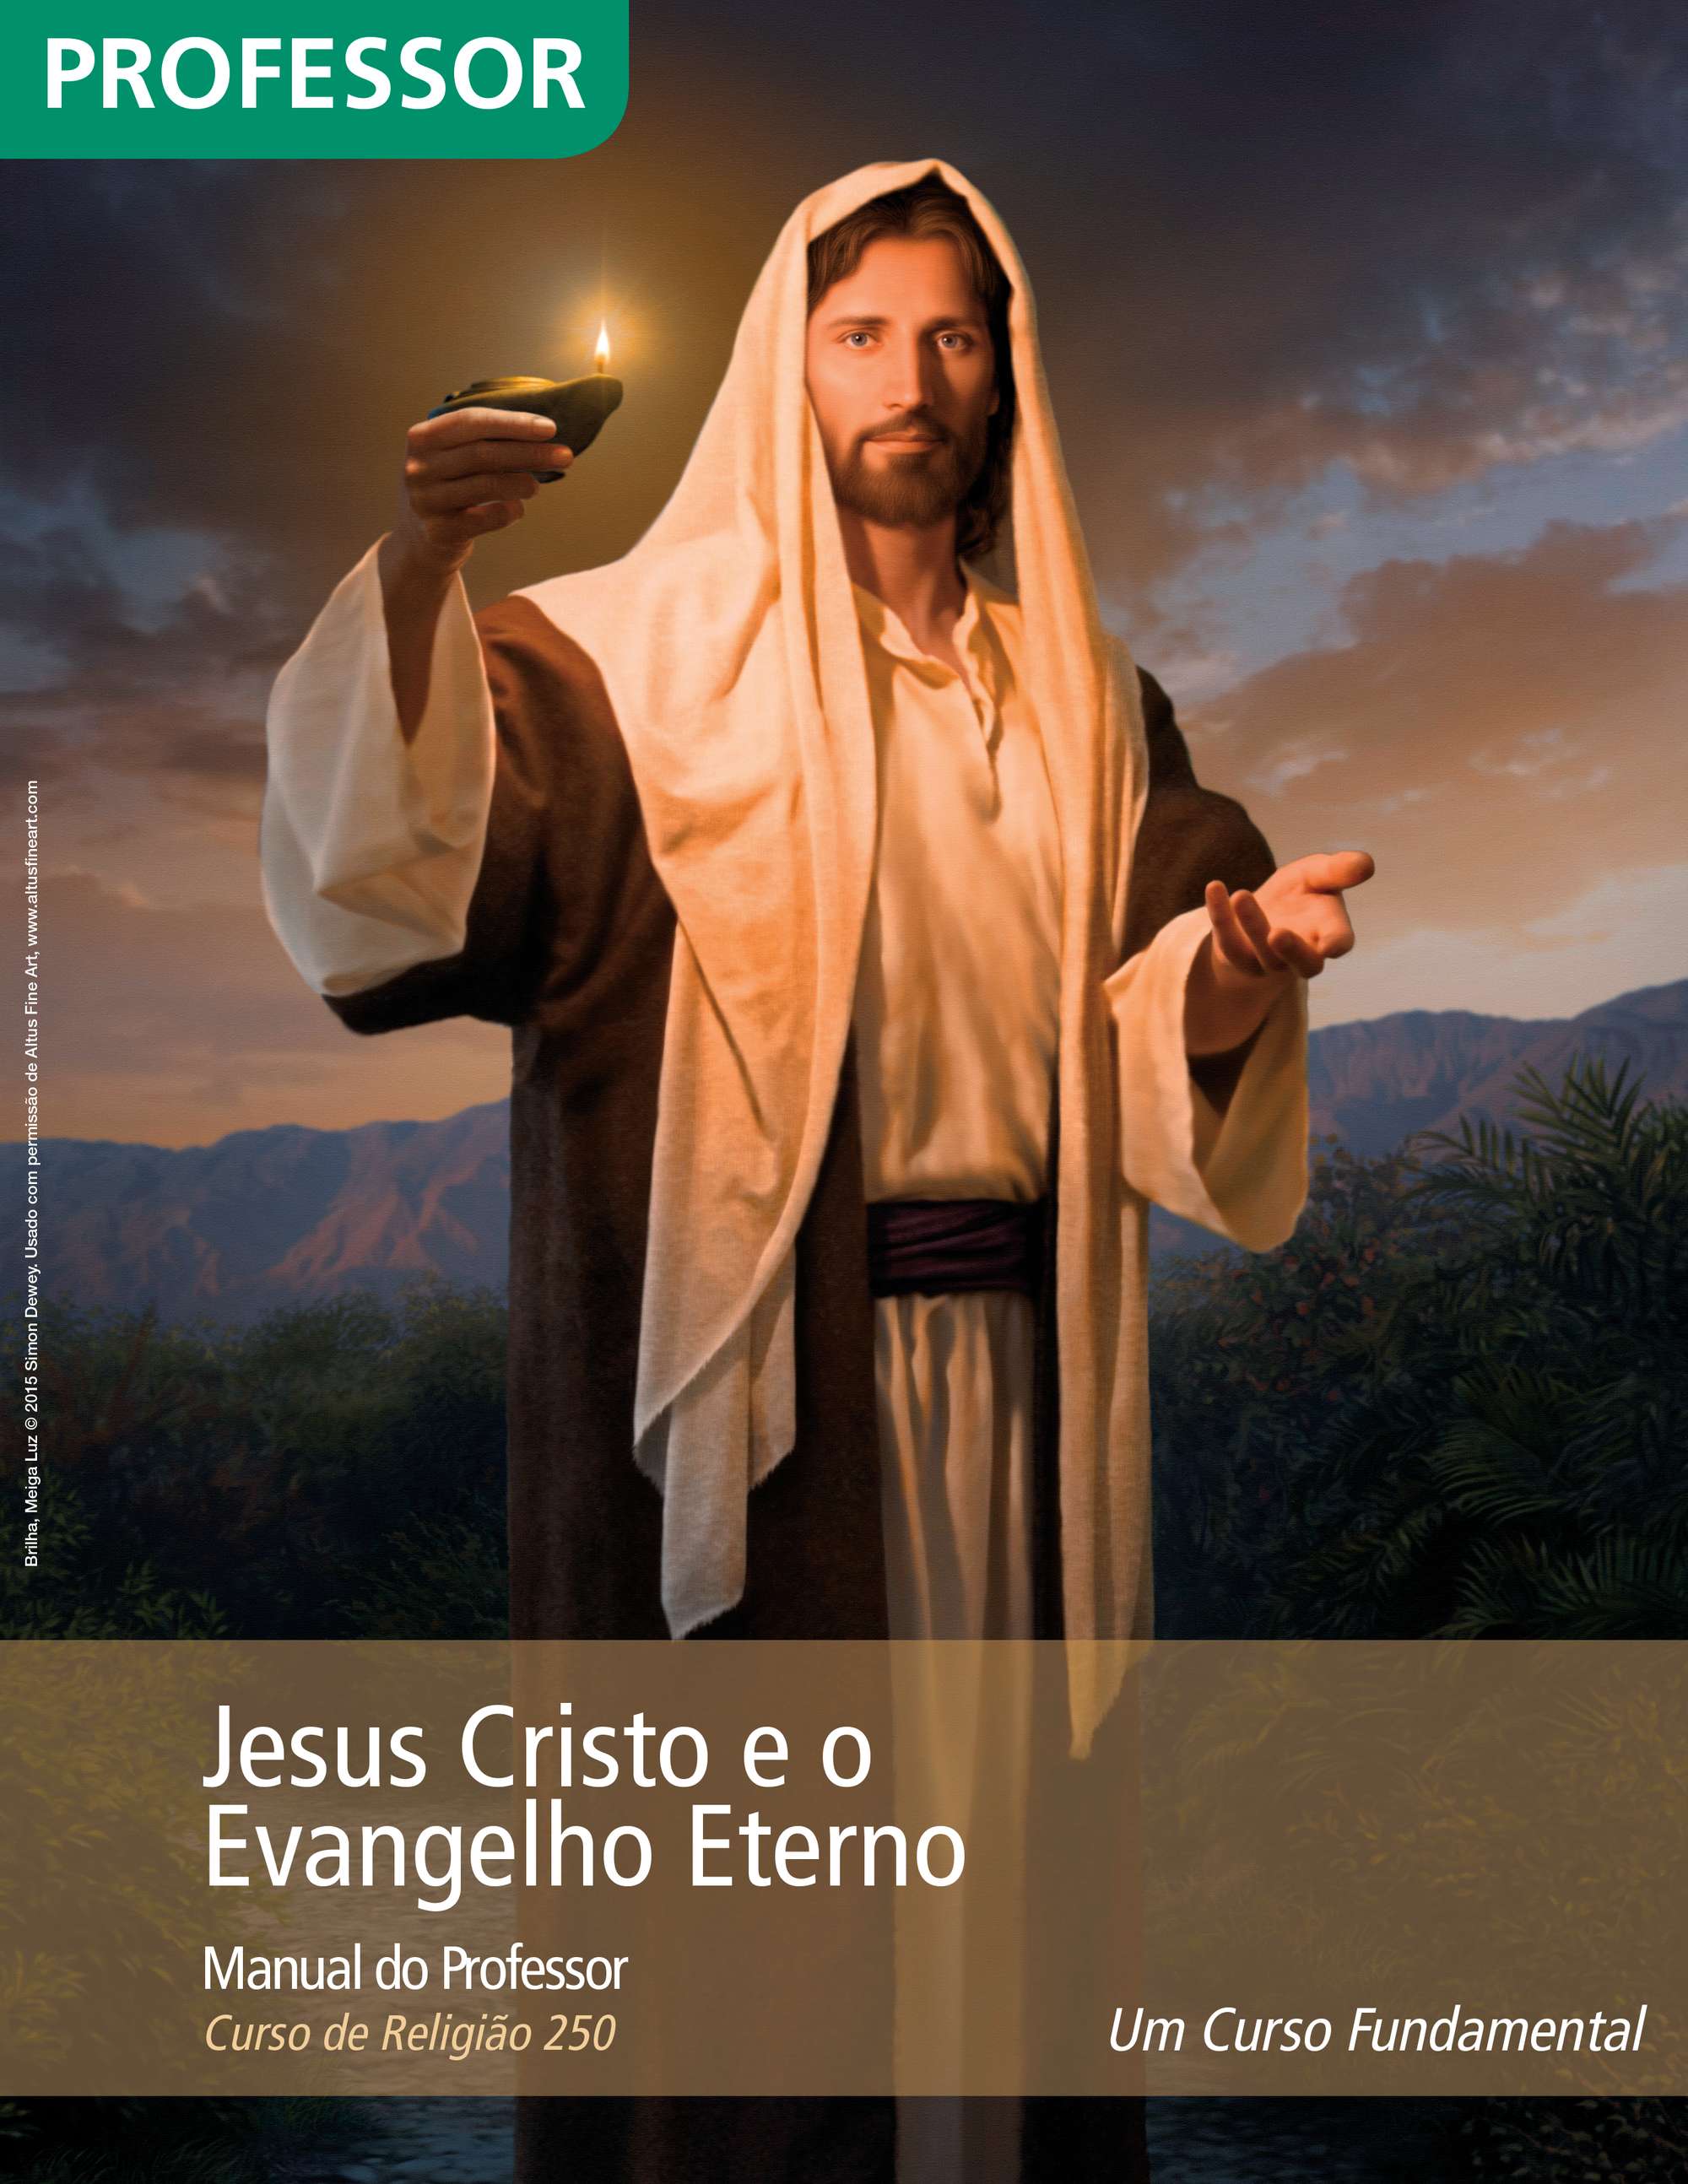 Jesus Cristo e o Evangelho Eterno — Manual do Professor